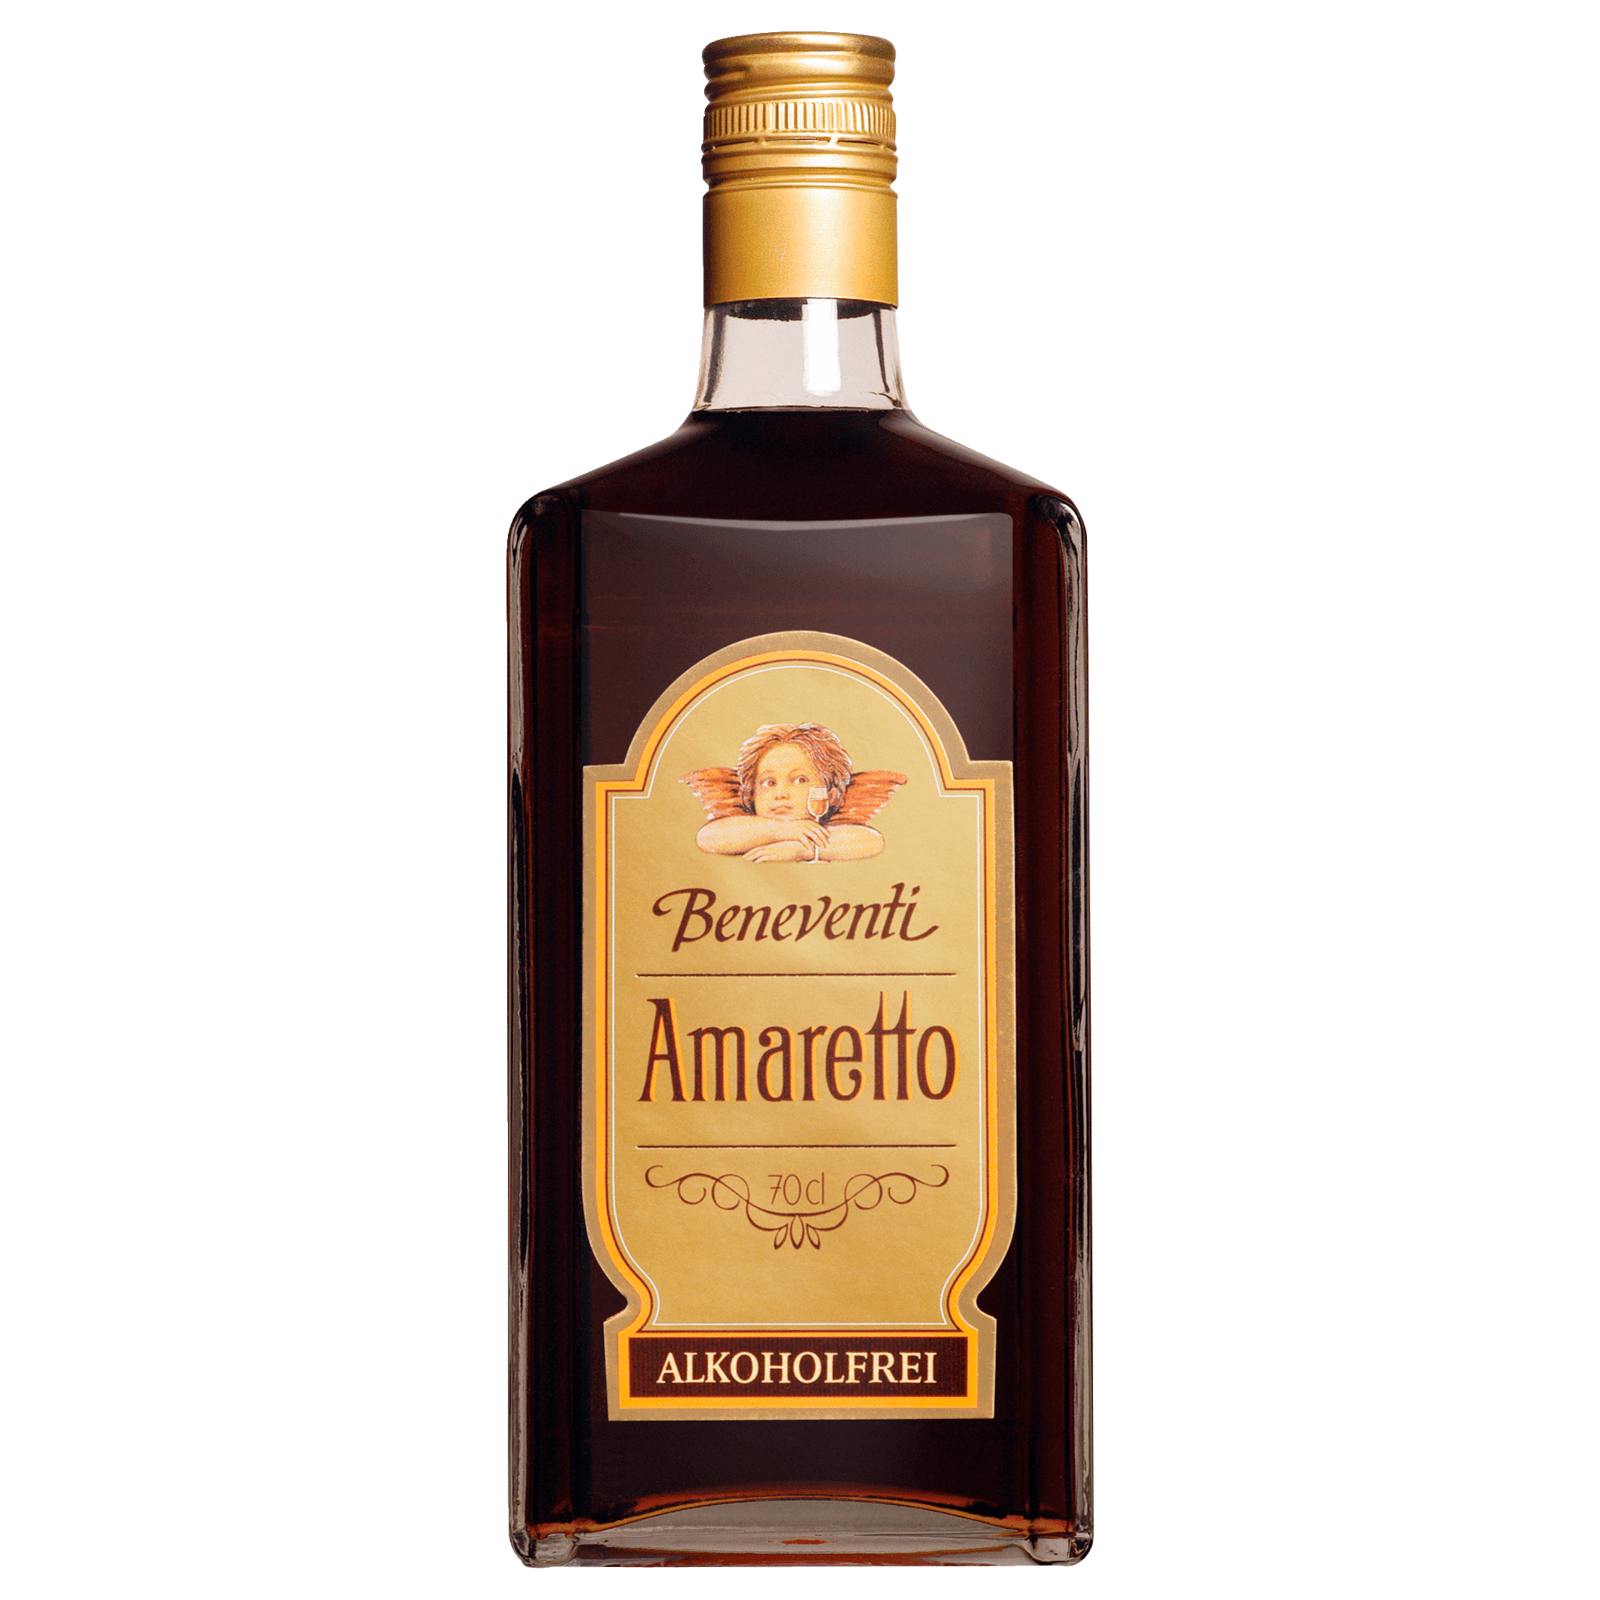 Beneventi Amaretto alkoholfrei 0,7l bei REWE online bestellen!